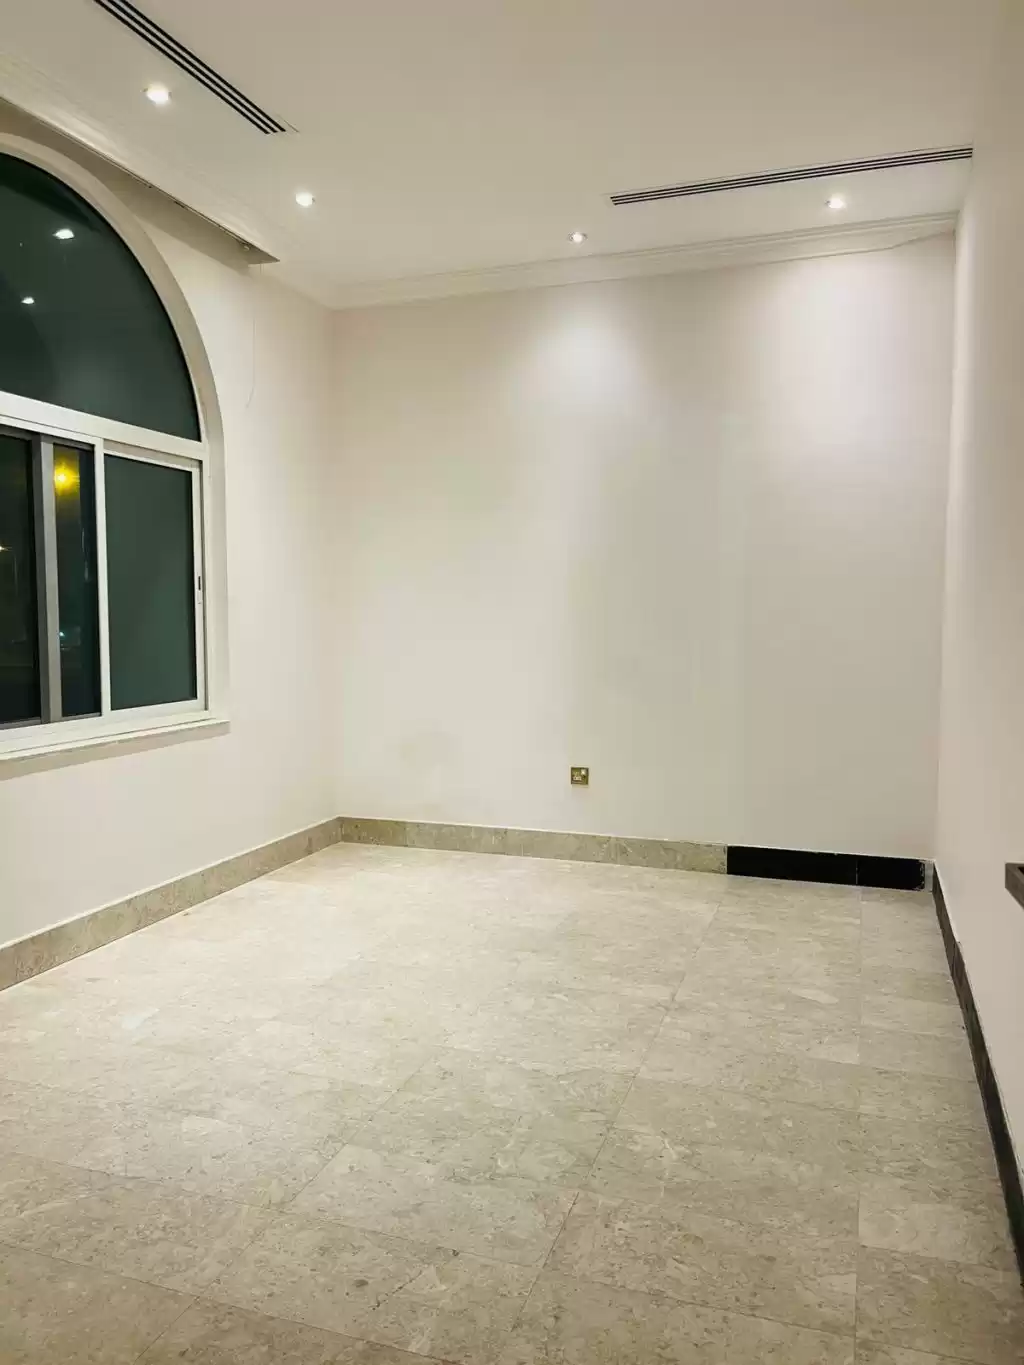 Résidentiel Propriété prête 2 chambres U / f Villa autonome  a louer au Al-Sadd , Doha #15314 - 1  image 